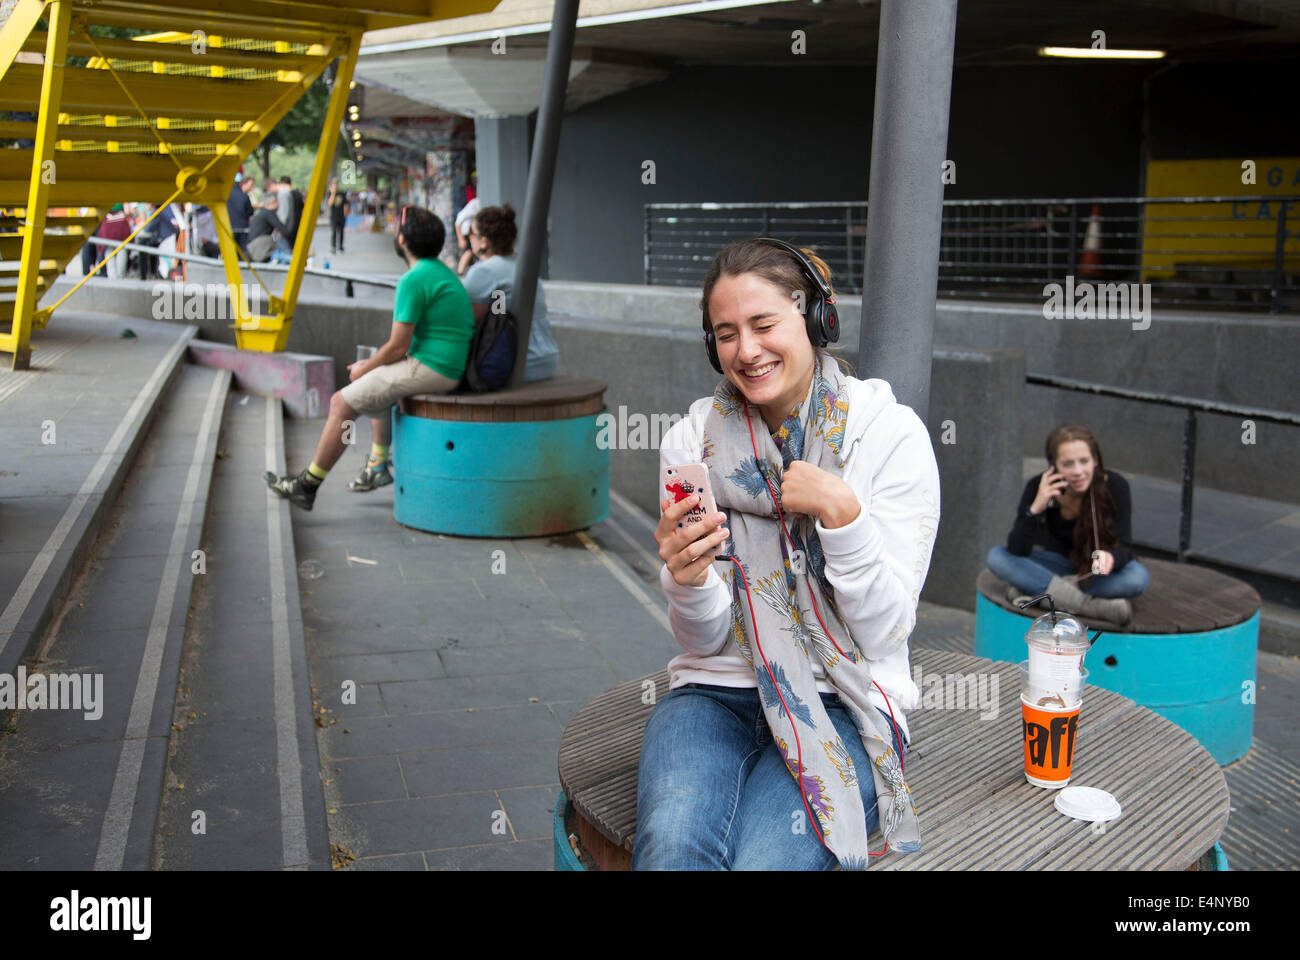 Junge Frau lächelt, während sie einen FaceTime-Anruf auf ihr Smartphone mit einem Freund genießt. South Bank, London, UK. Stockfoto